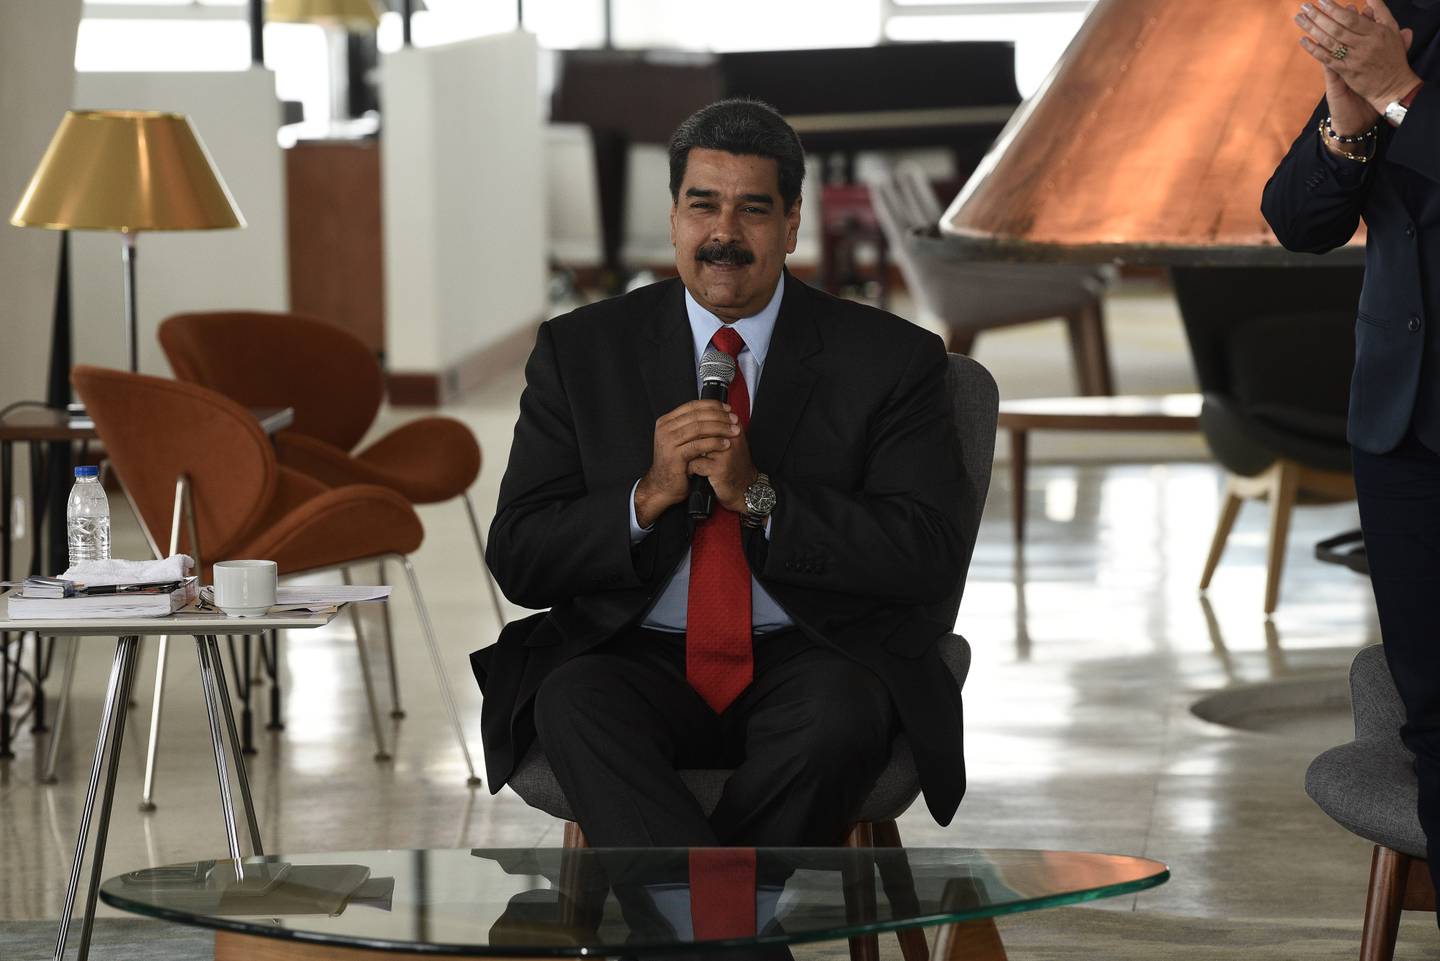 El presidente Maduro en el evento de reapertura del Hotel Humboldt, dentro del parque nacional en 2018.Fotógrafo: Carlos Becerra/Bloombergdfd